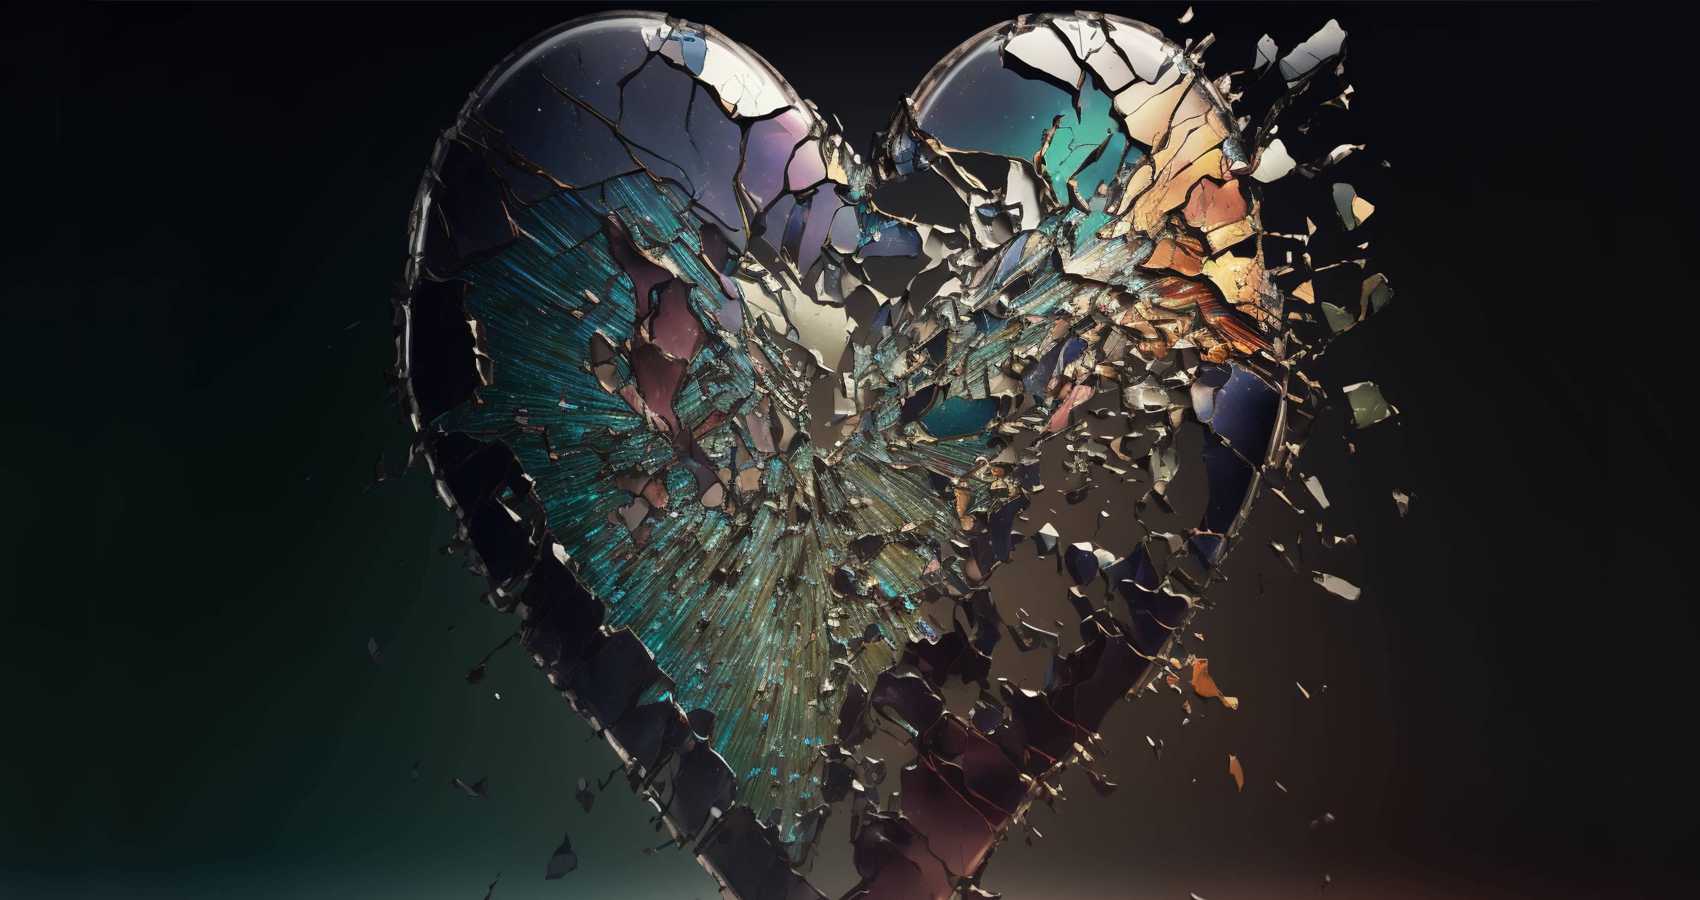 Broken Heart, poem by Srinidhi Jitesh Menon at Spillwords.com